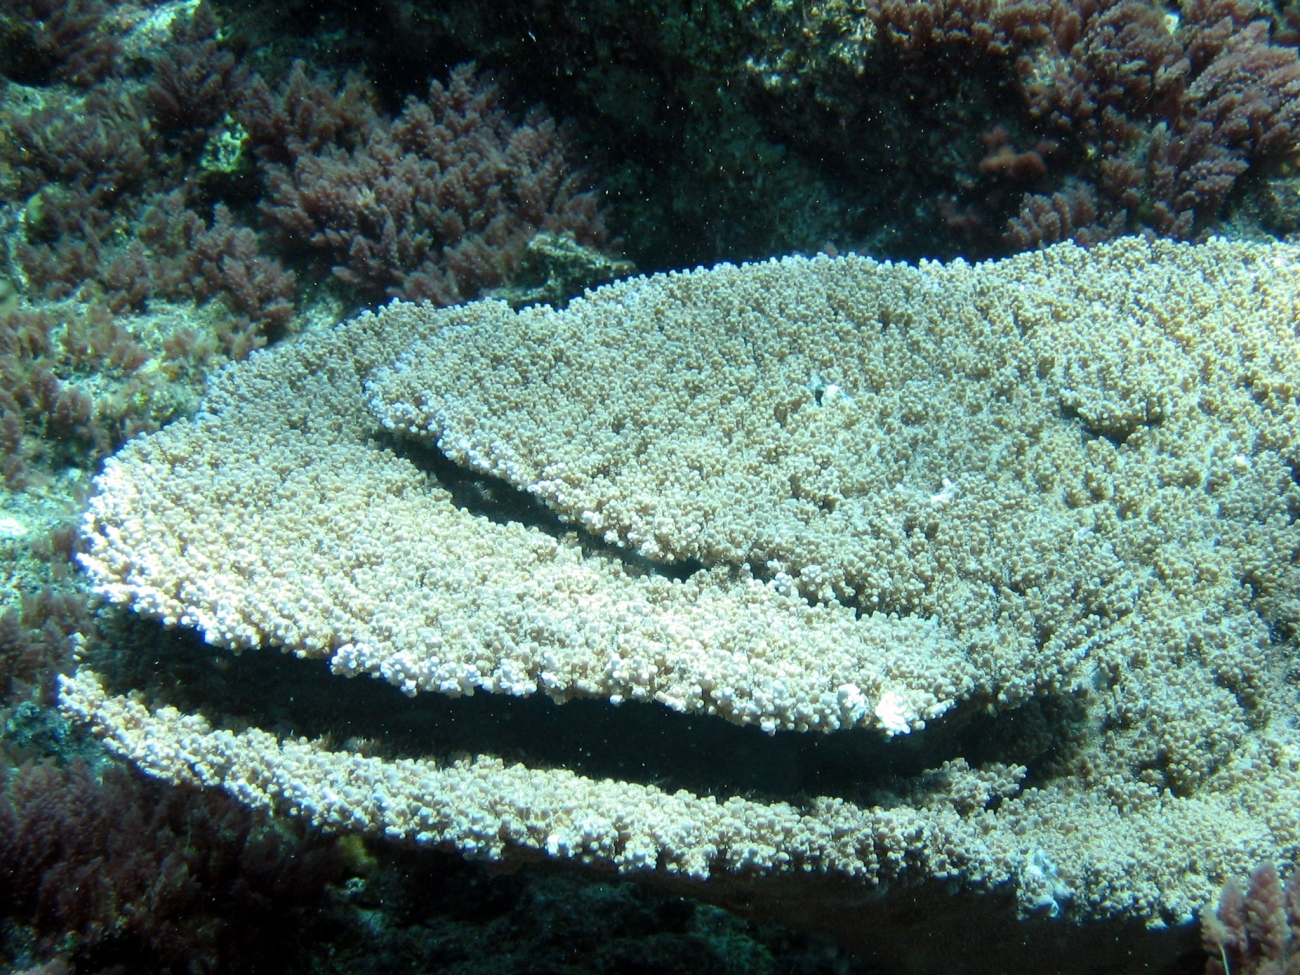 Acropora table coral (Acropora cytherea)